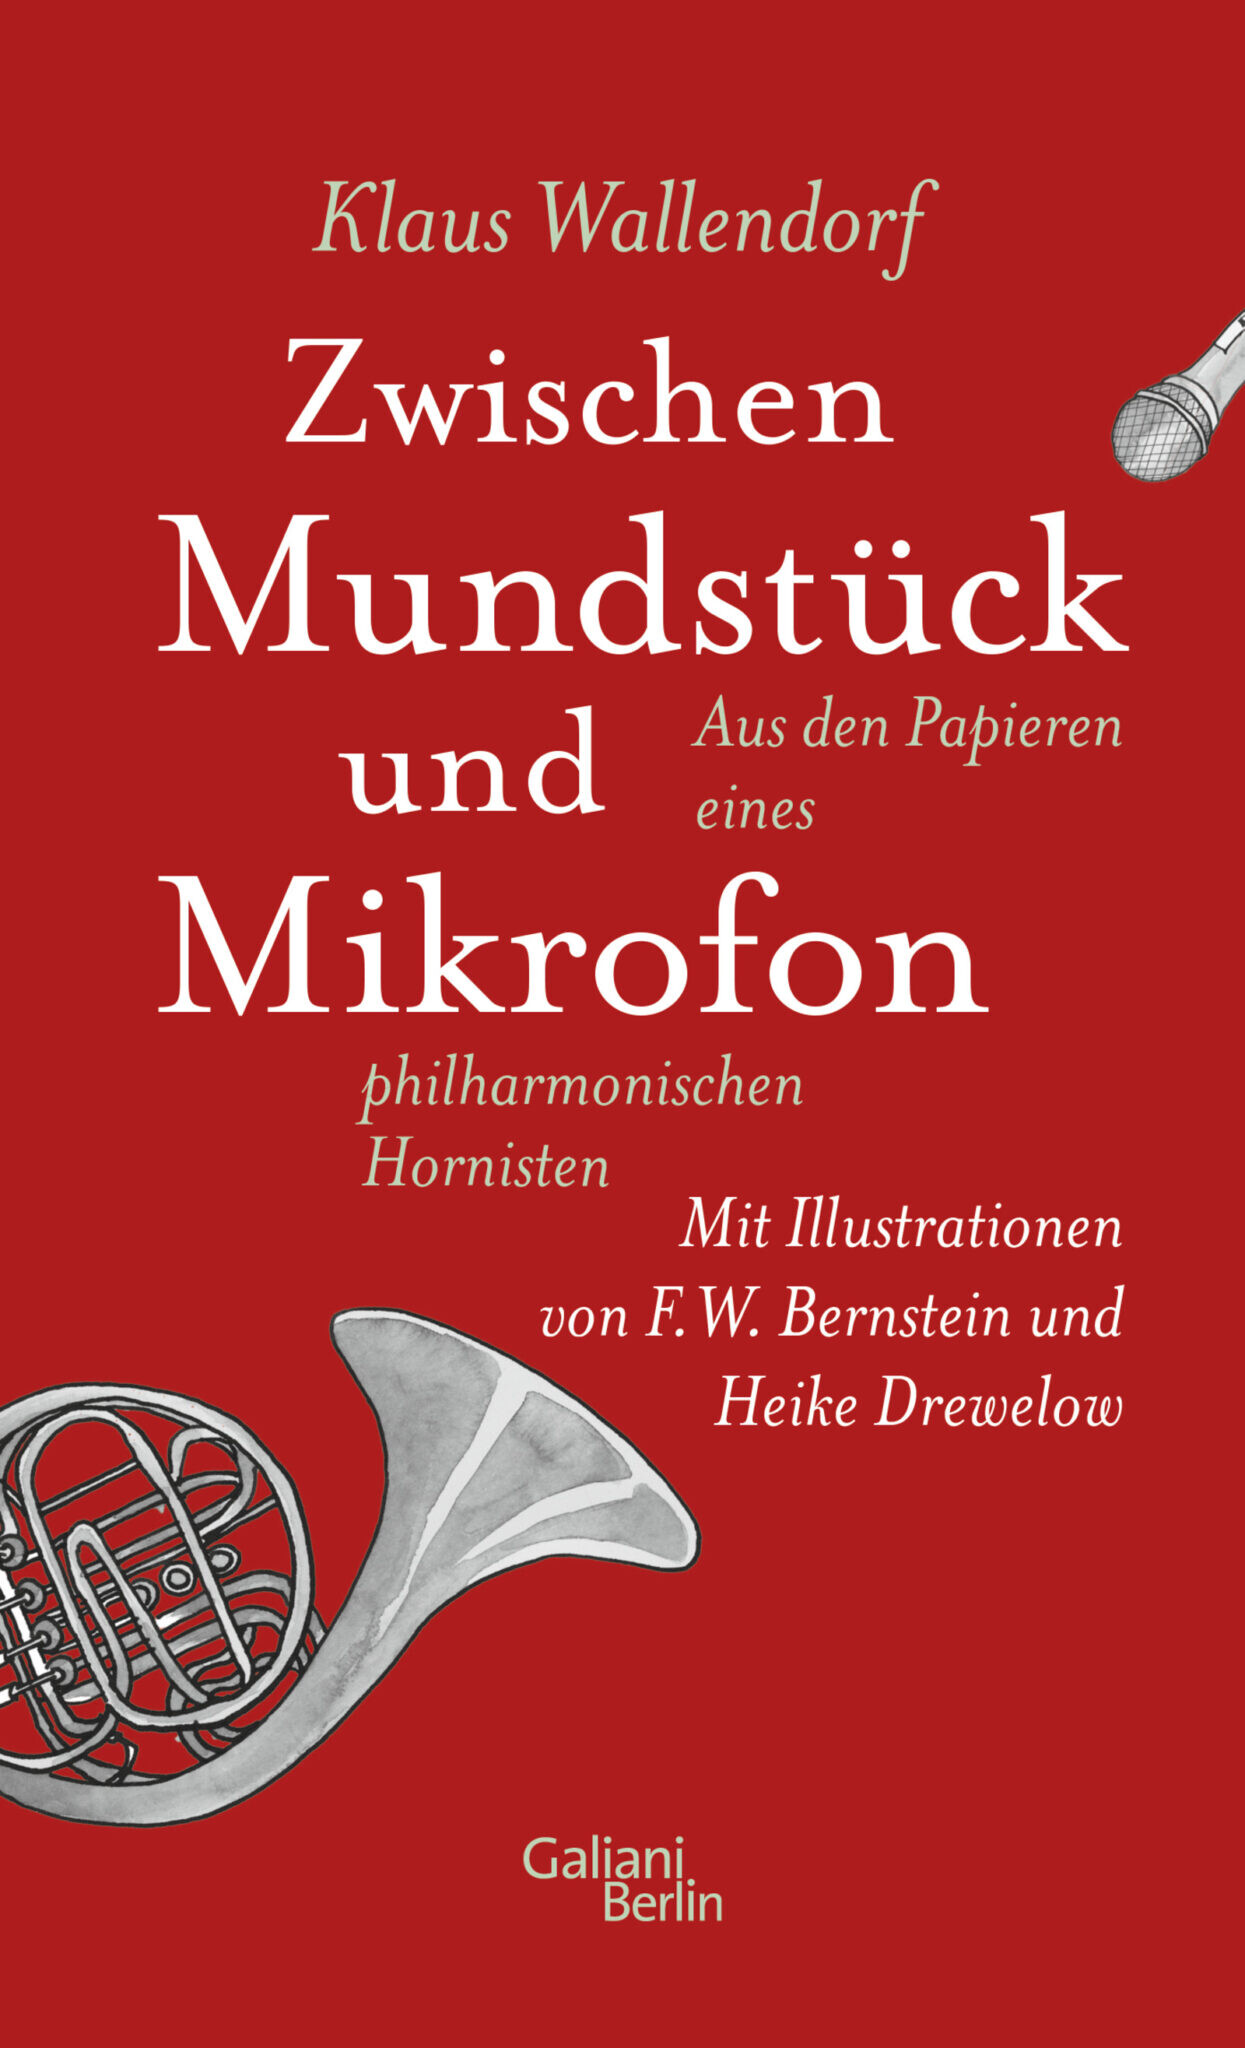 Cover von Klaus Wallendorfs Buch „Zwischen Mundstück und Mikrofon. Aus den Papieren eines philharmonischen Hornisten“